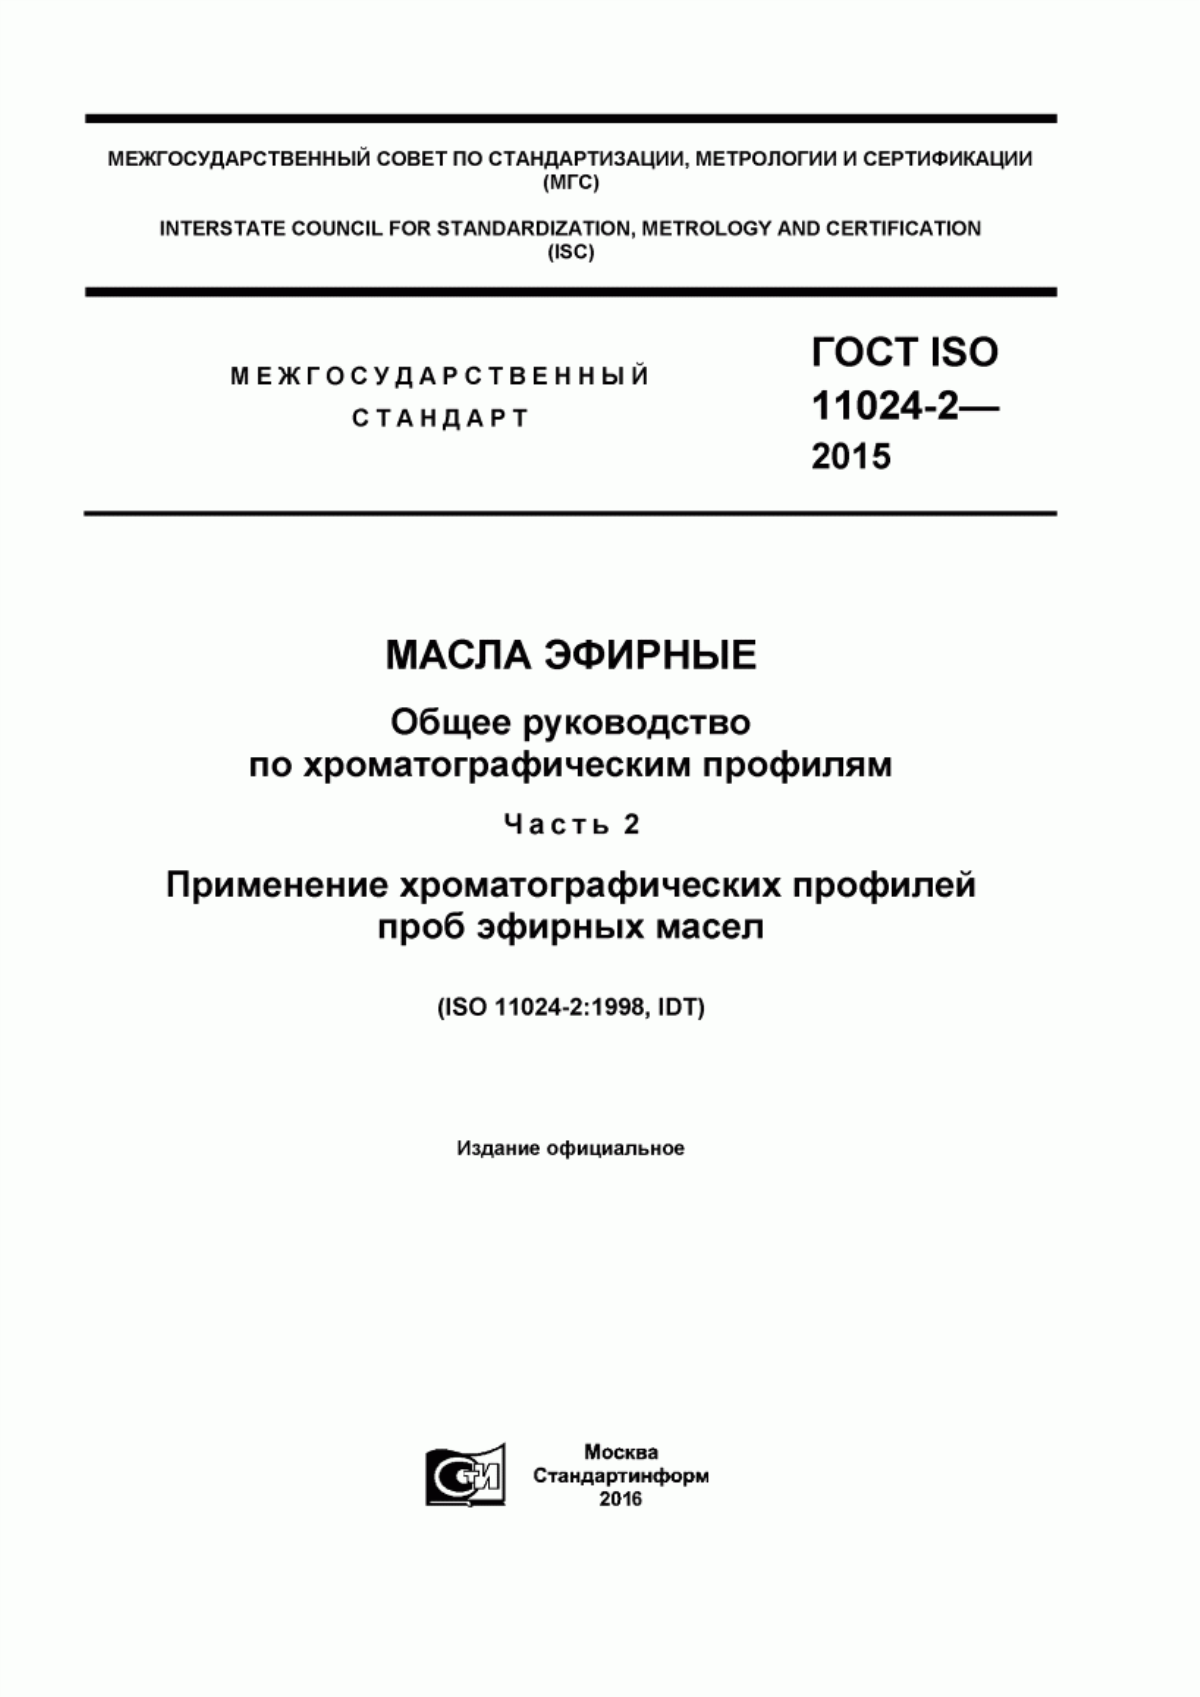 ГОСТ ISO 11024-2-2015 Масла эфирные. Общее руководство по хроматографическим профилям. Часть 2. Применение хроматографических профилей проб эфирных масел